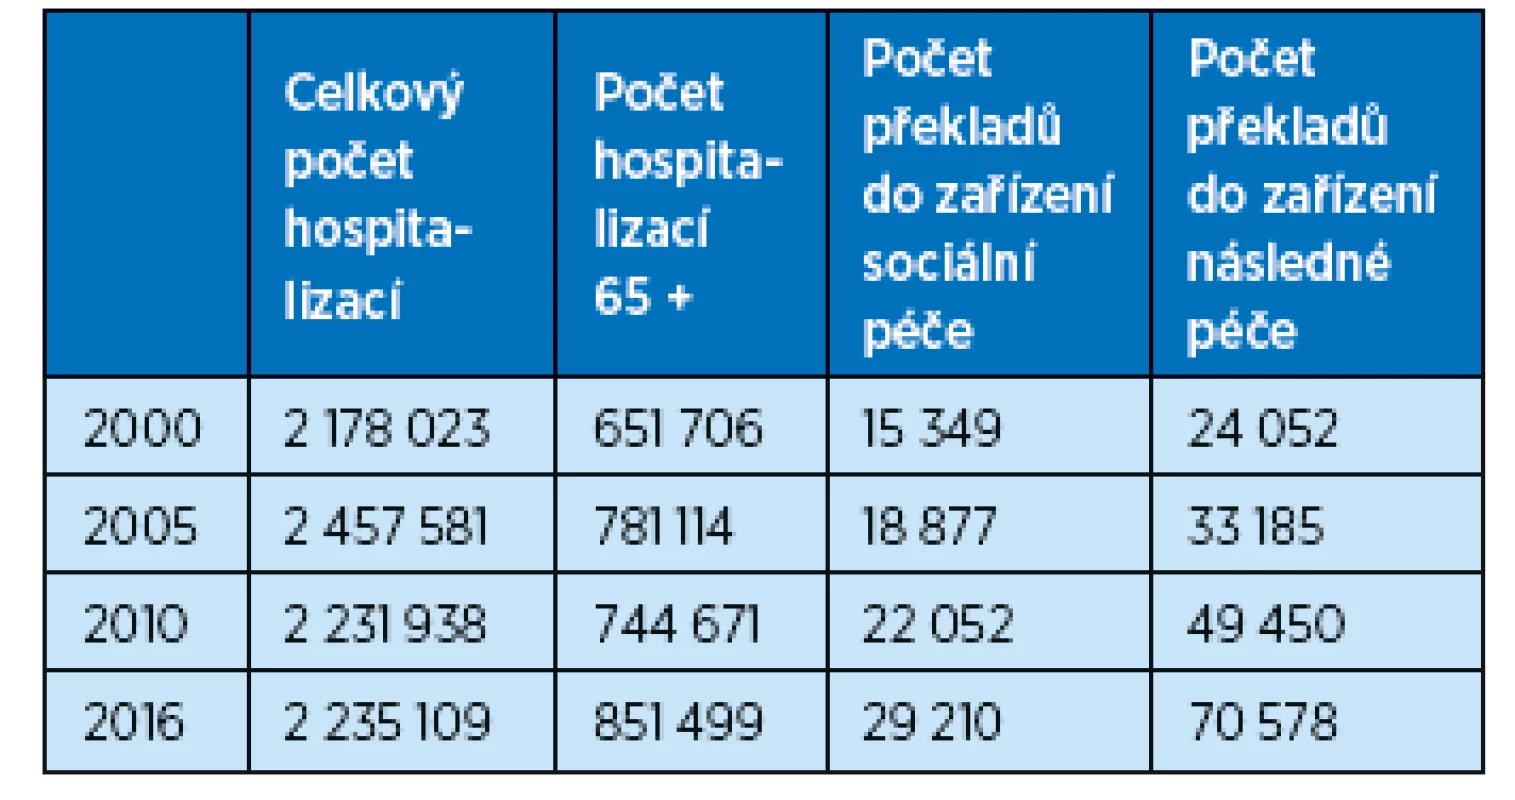 Počty hospitalizací pacientů a pacientů přeložených do zařízení
sociální a následné péče